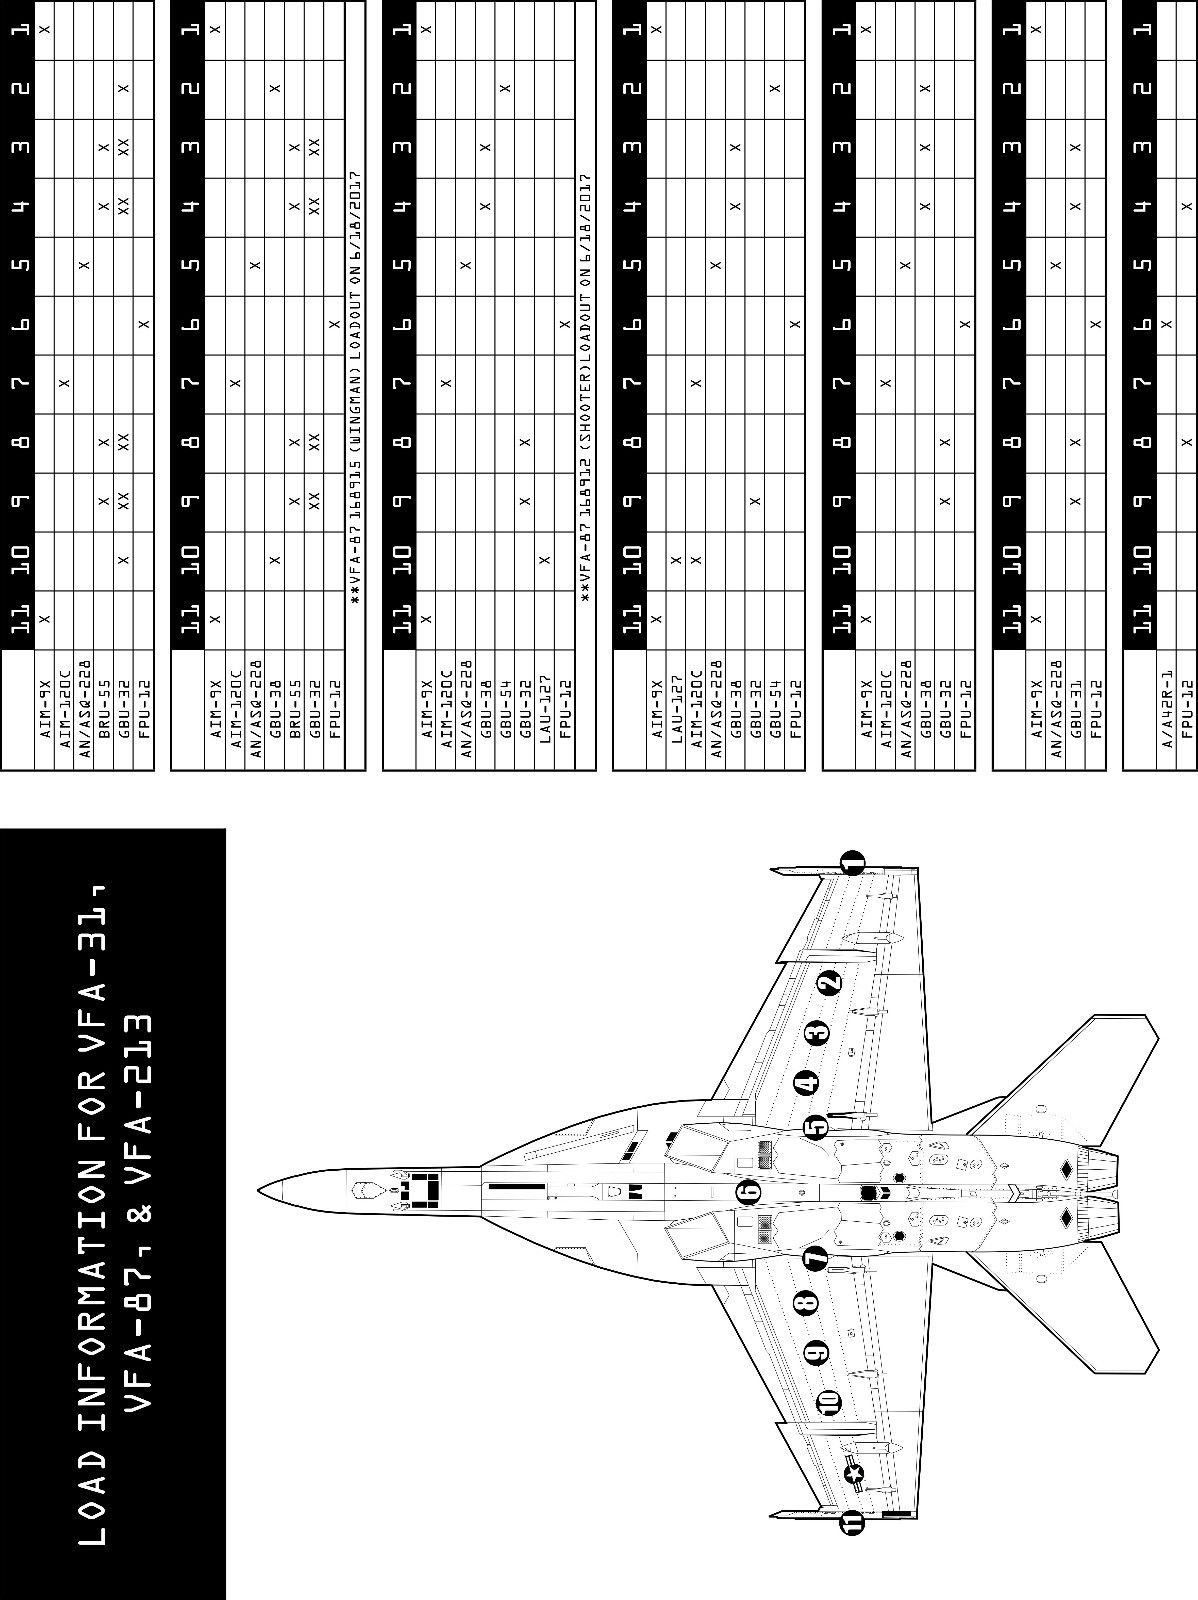 1/72 F-18C/E/F, EA-18G 第8航空联队作战飞机